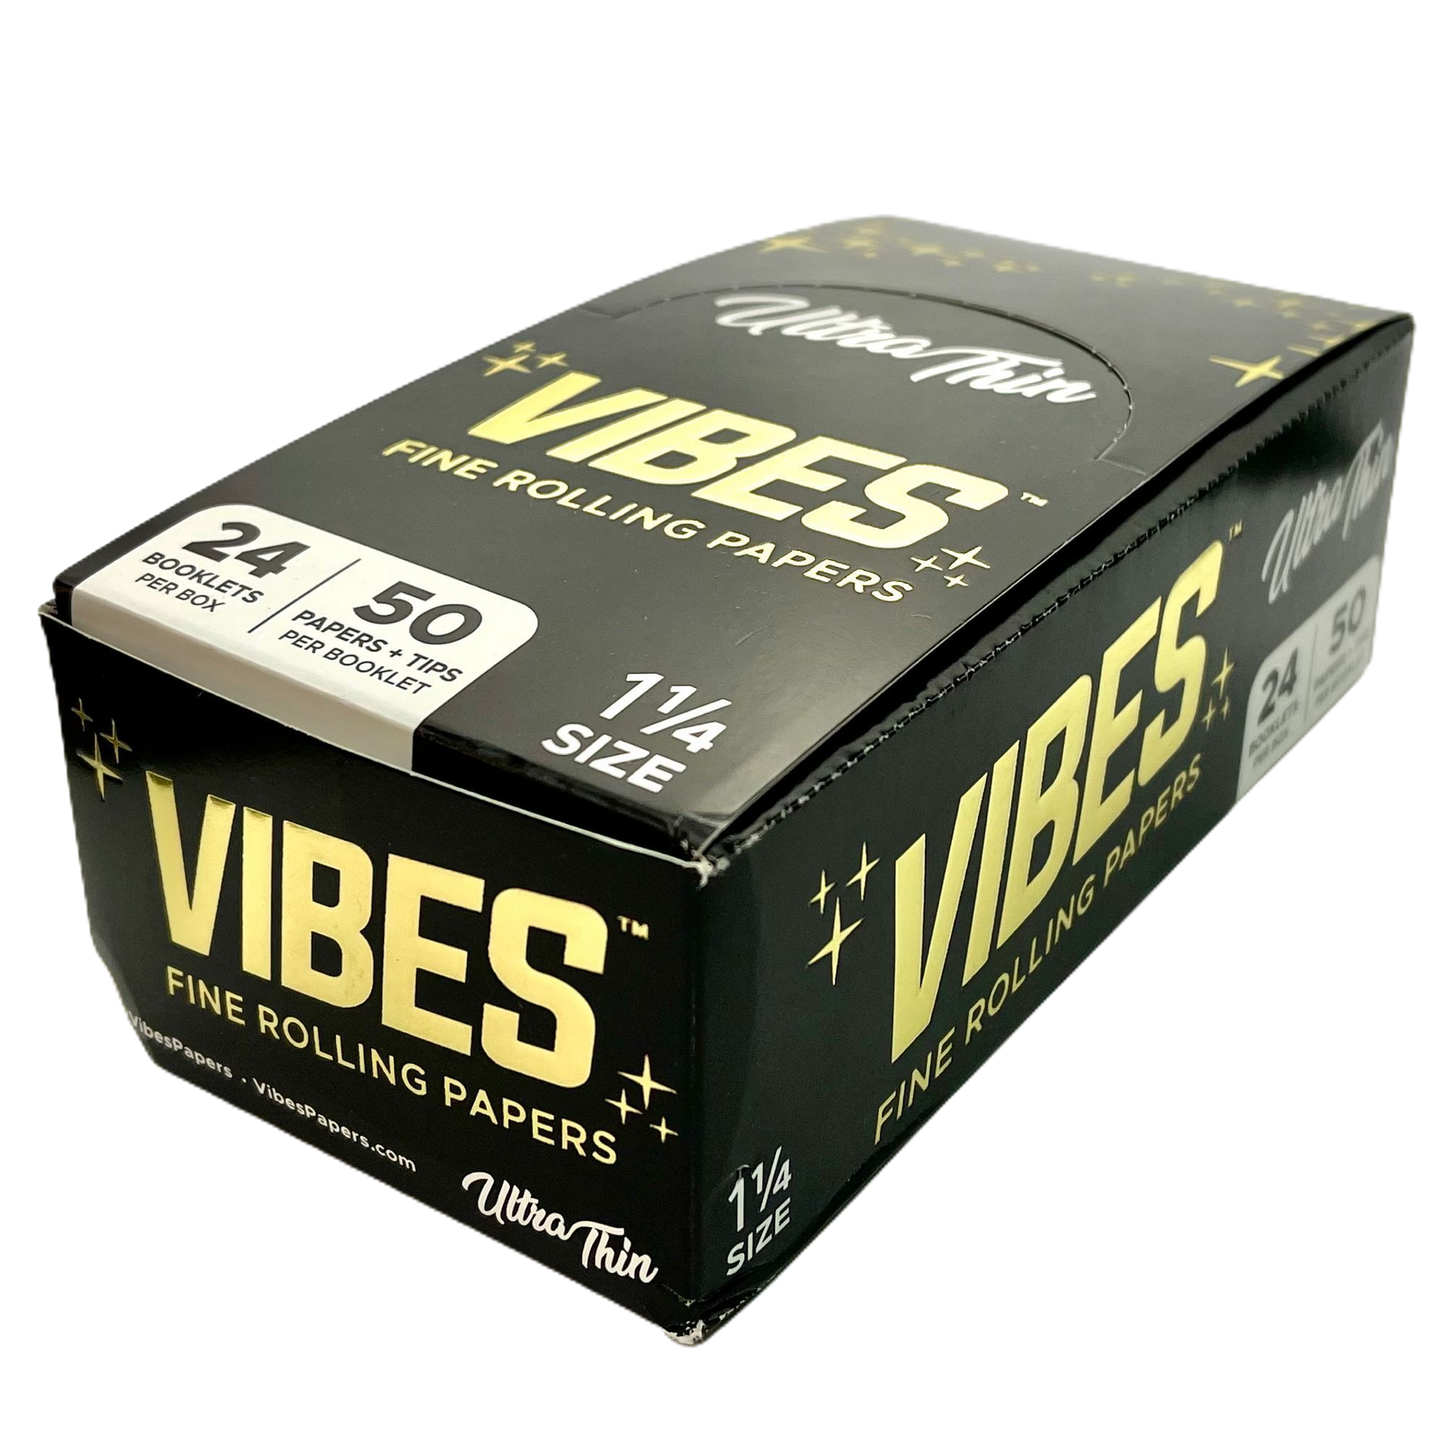 Vibes - Ultra Thin (Black Box)